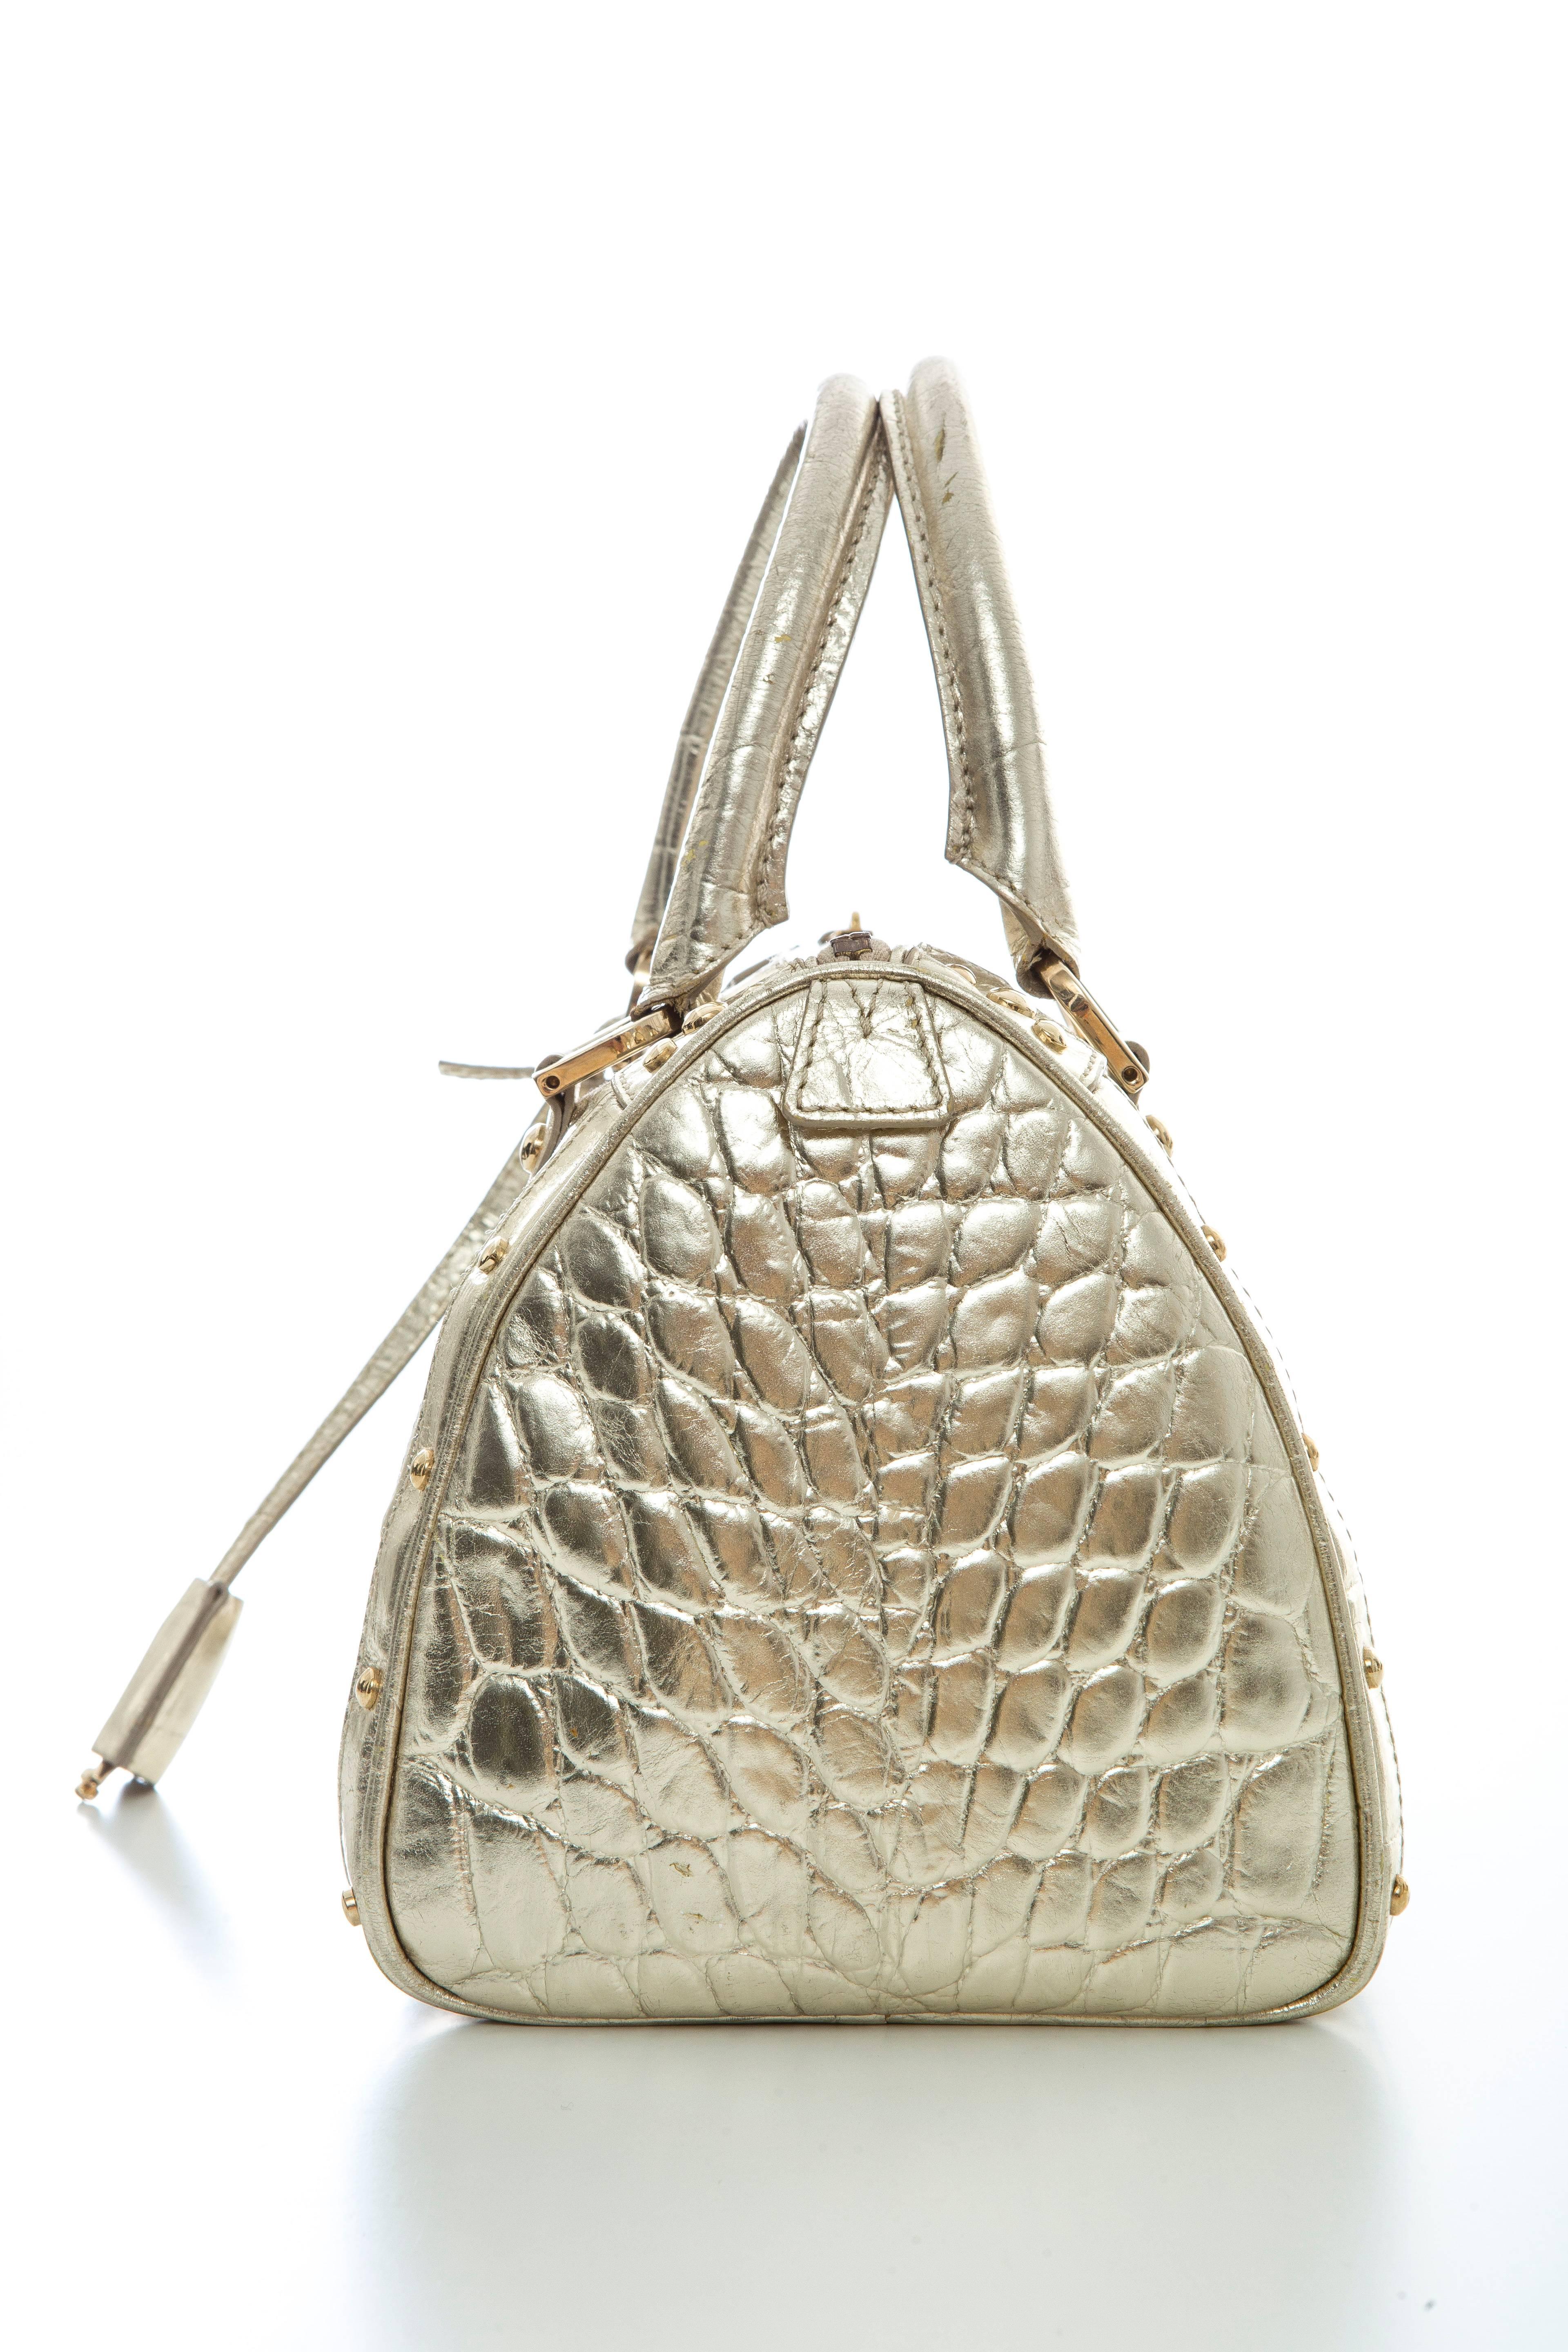 Women's Versace Madonna Embossed Metallic Gold Leather Top Handle Handbag